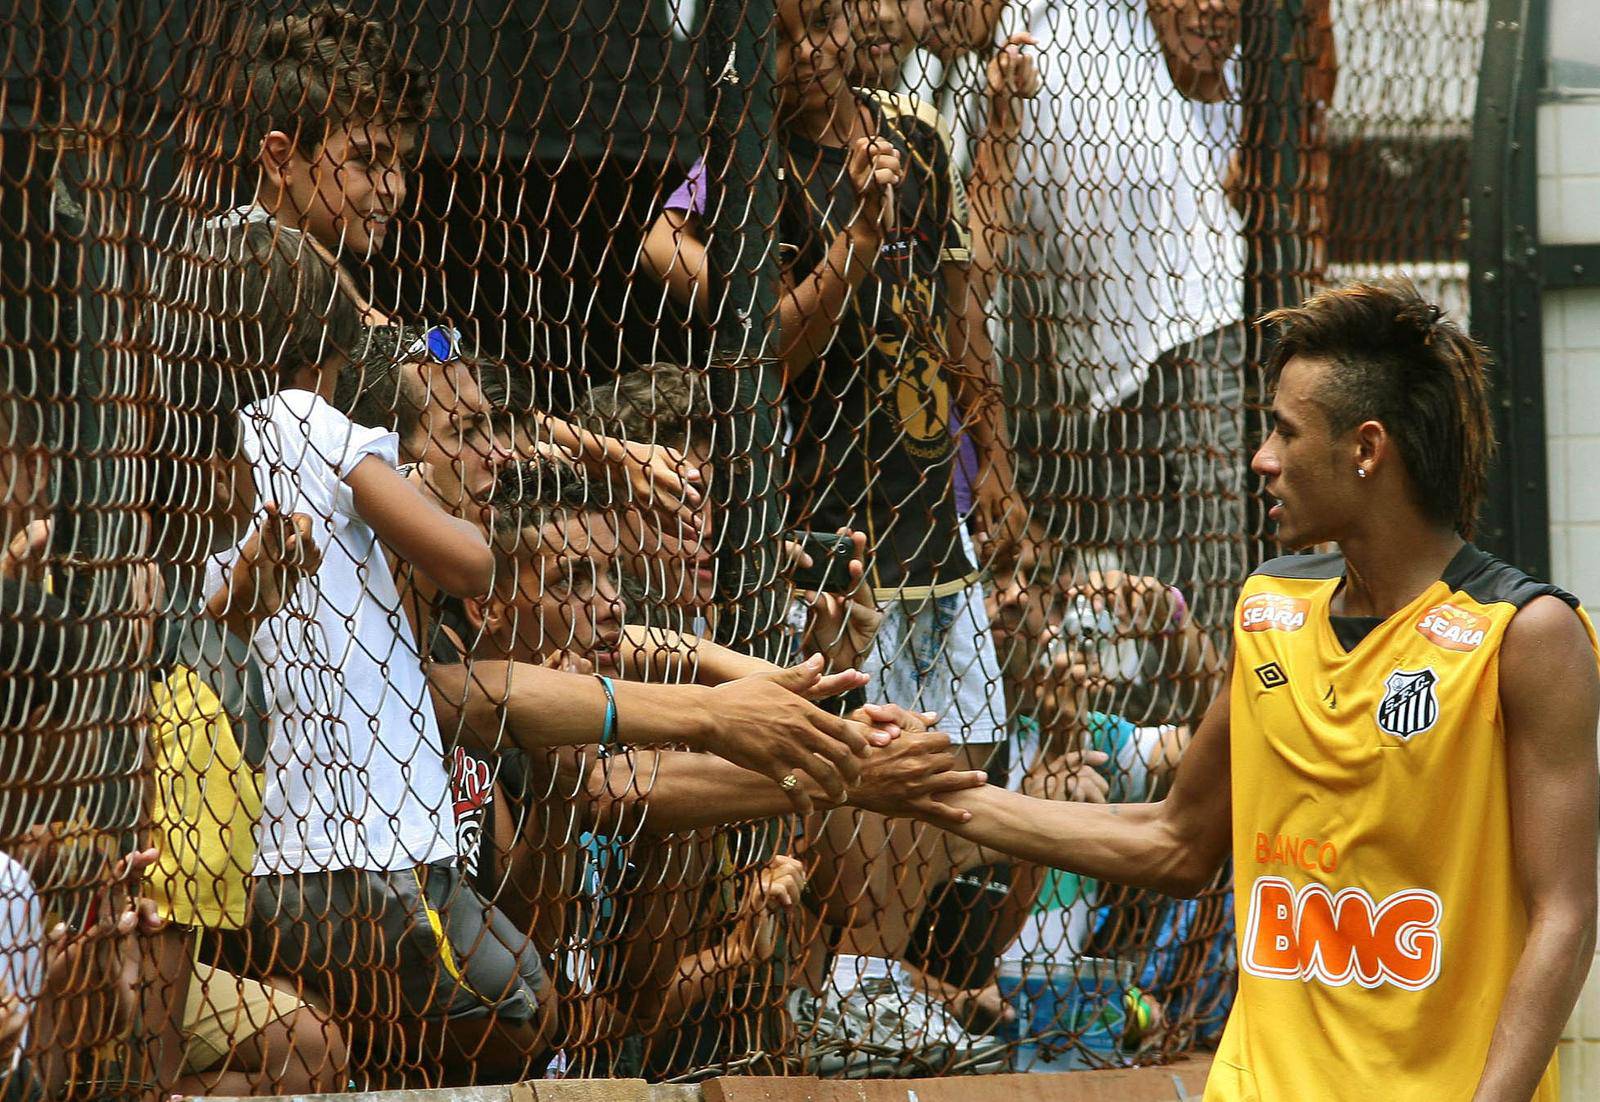 Sao Paulo: Nogometaš Neymar odradio je trening 